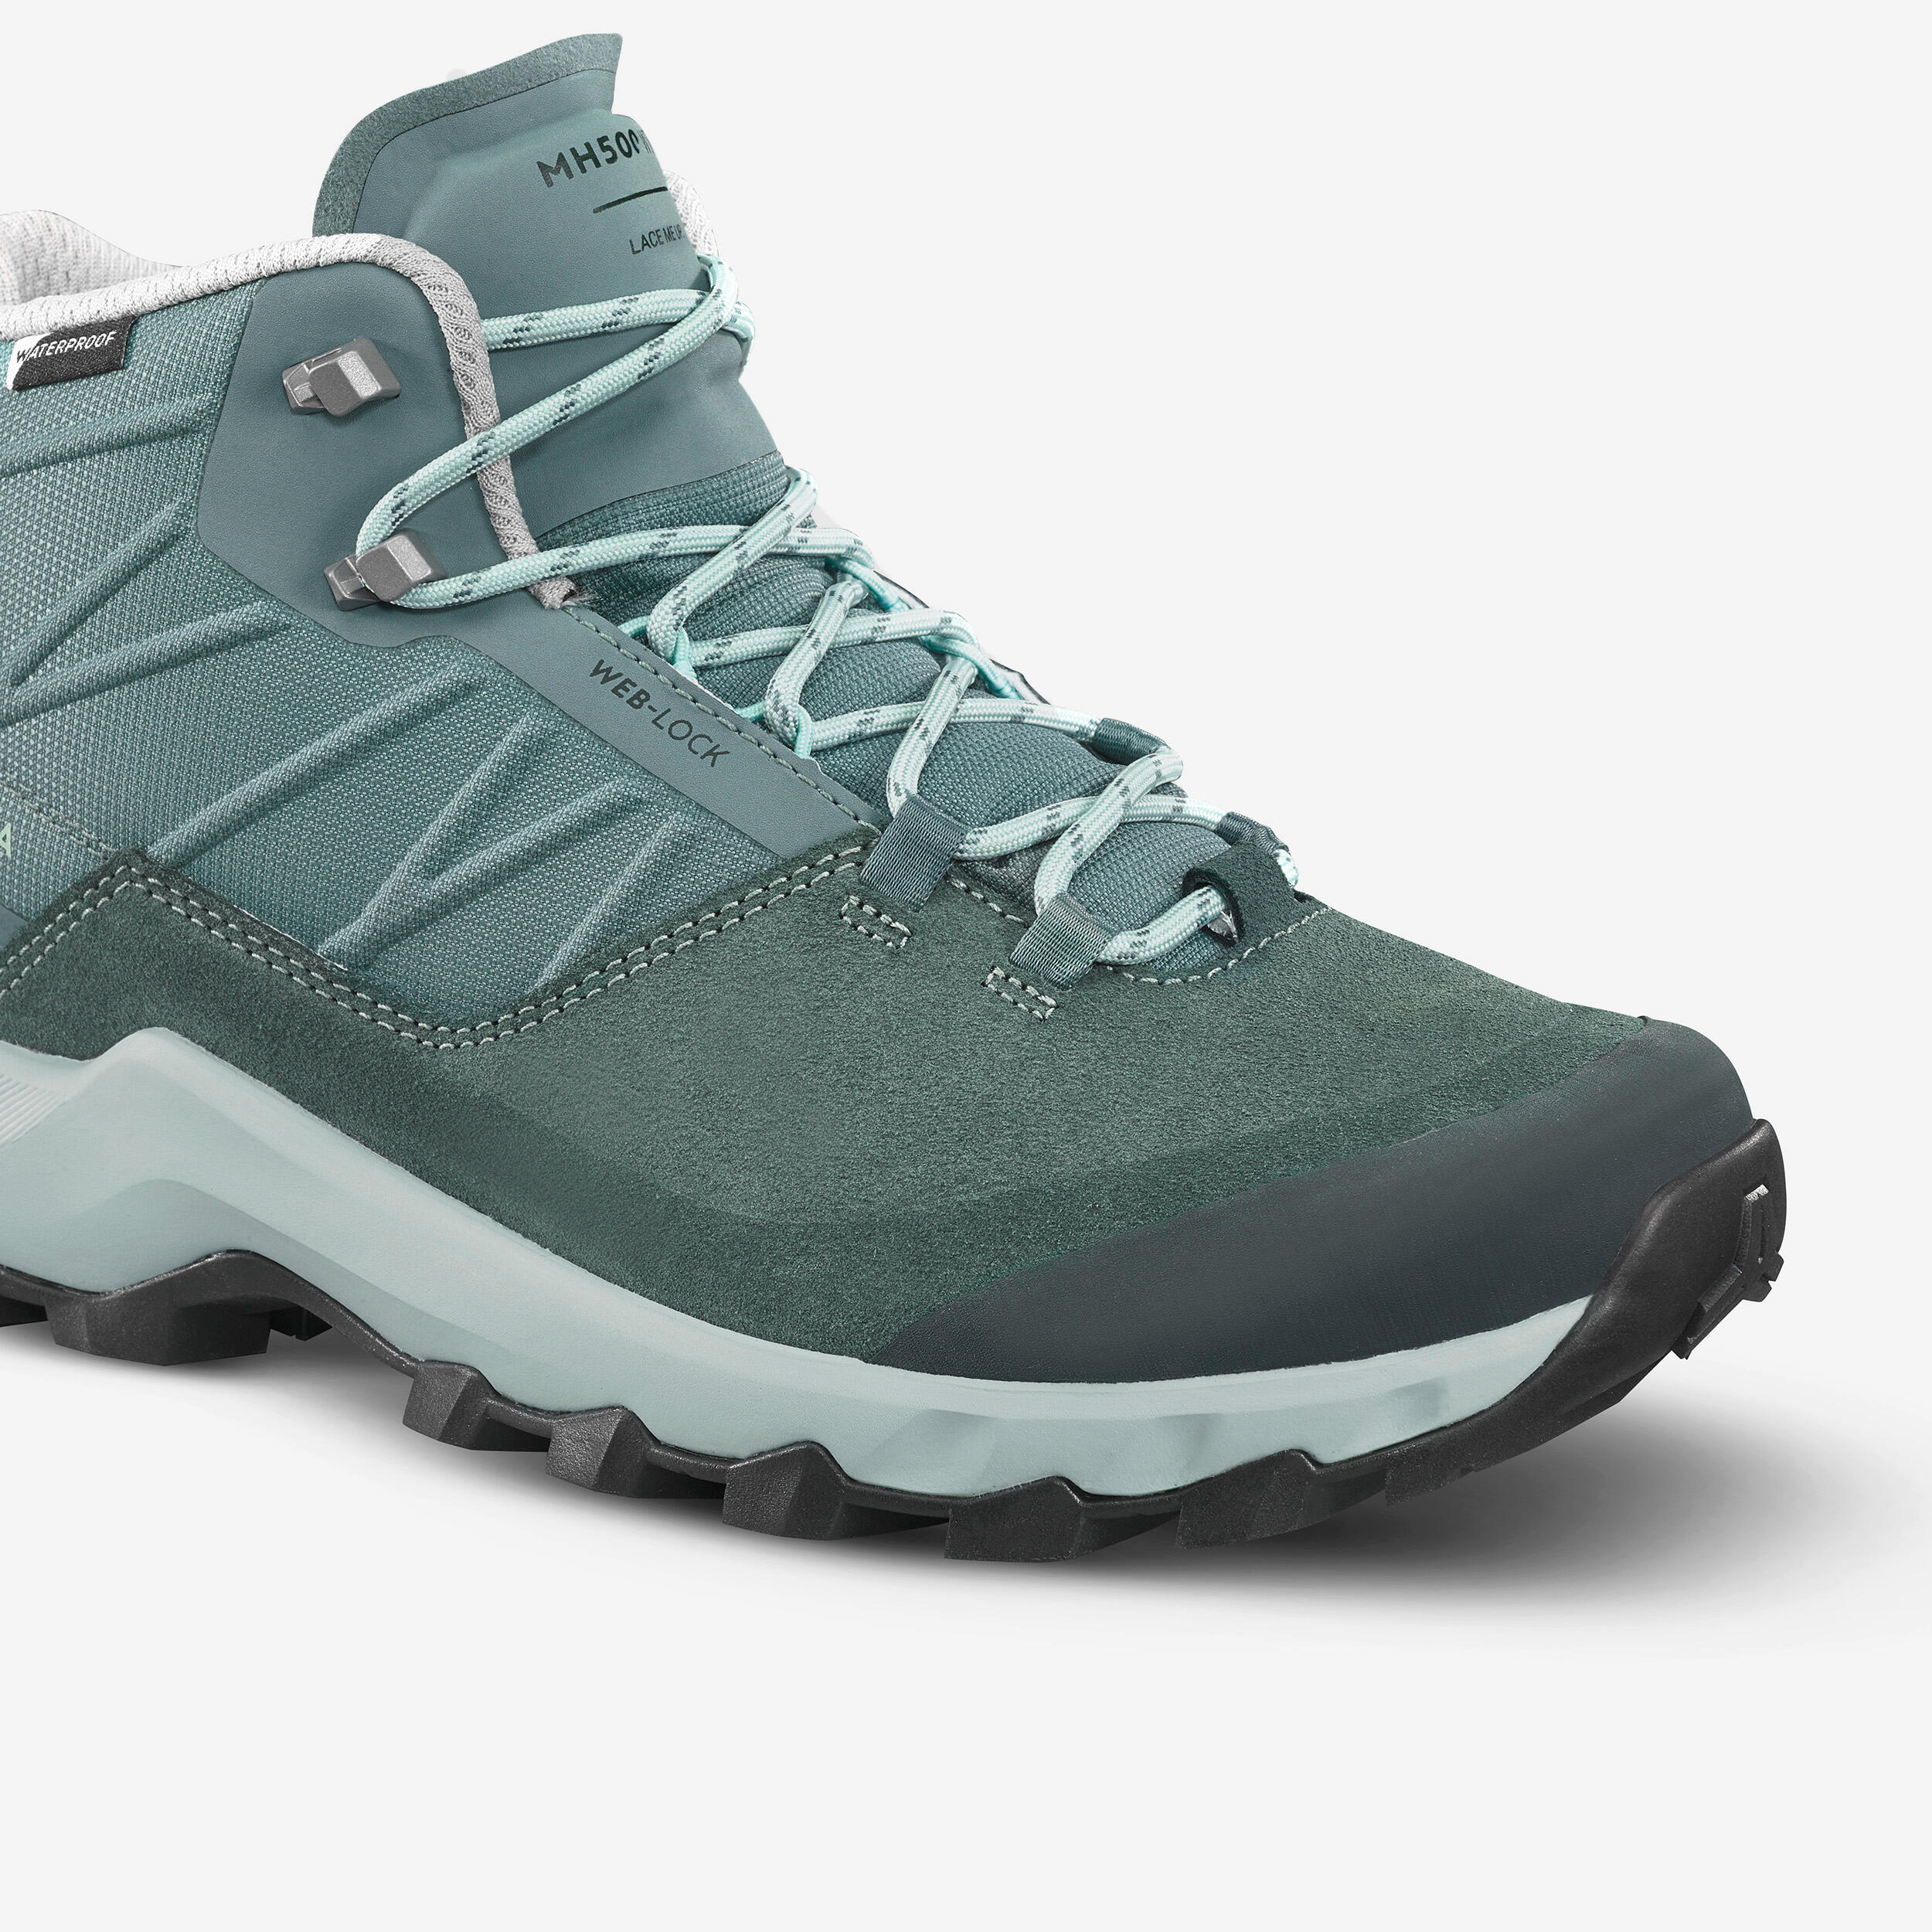 Women’s waterproof mountain walking boots - MH500 Mid - Green 8/12